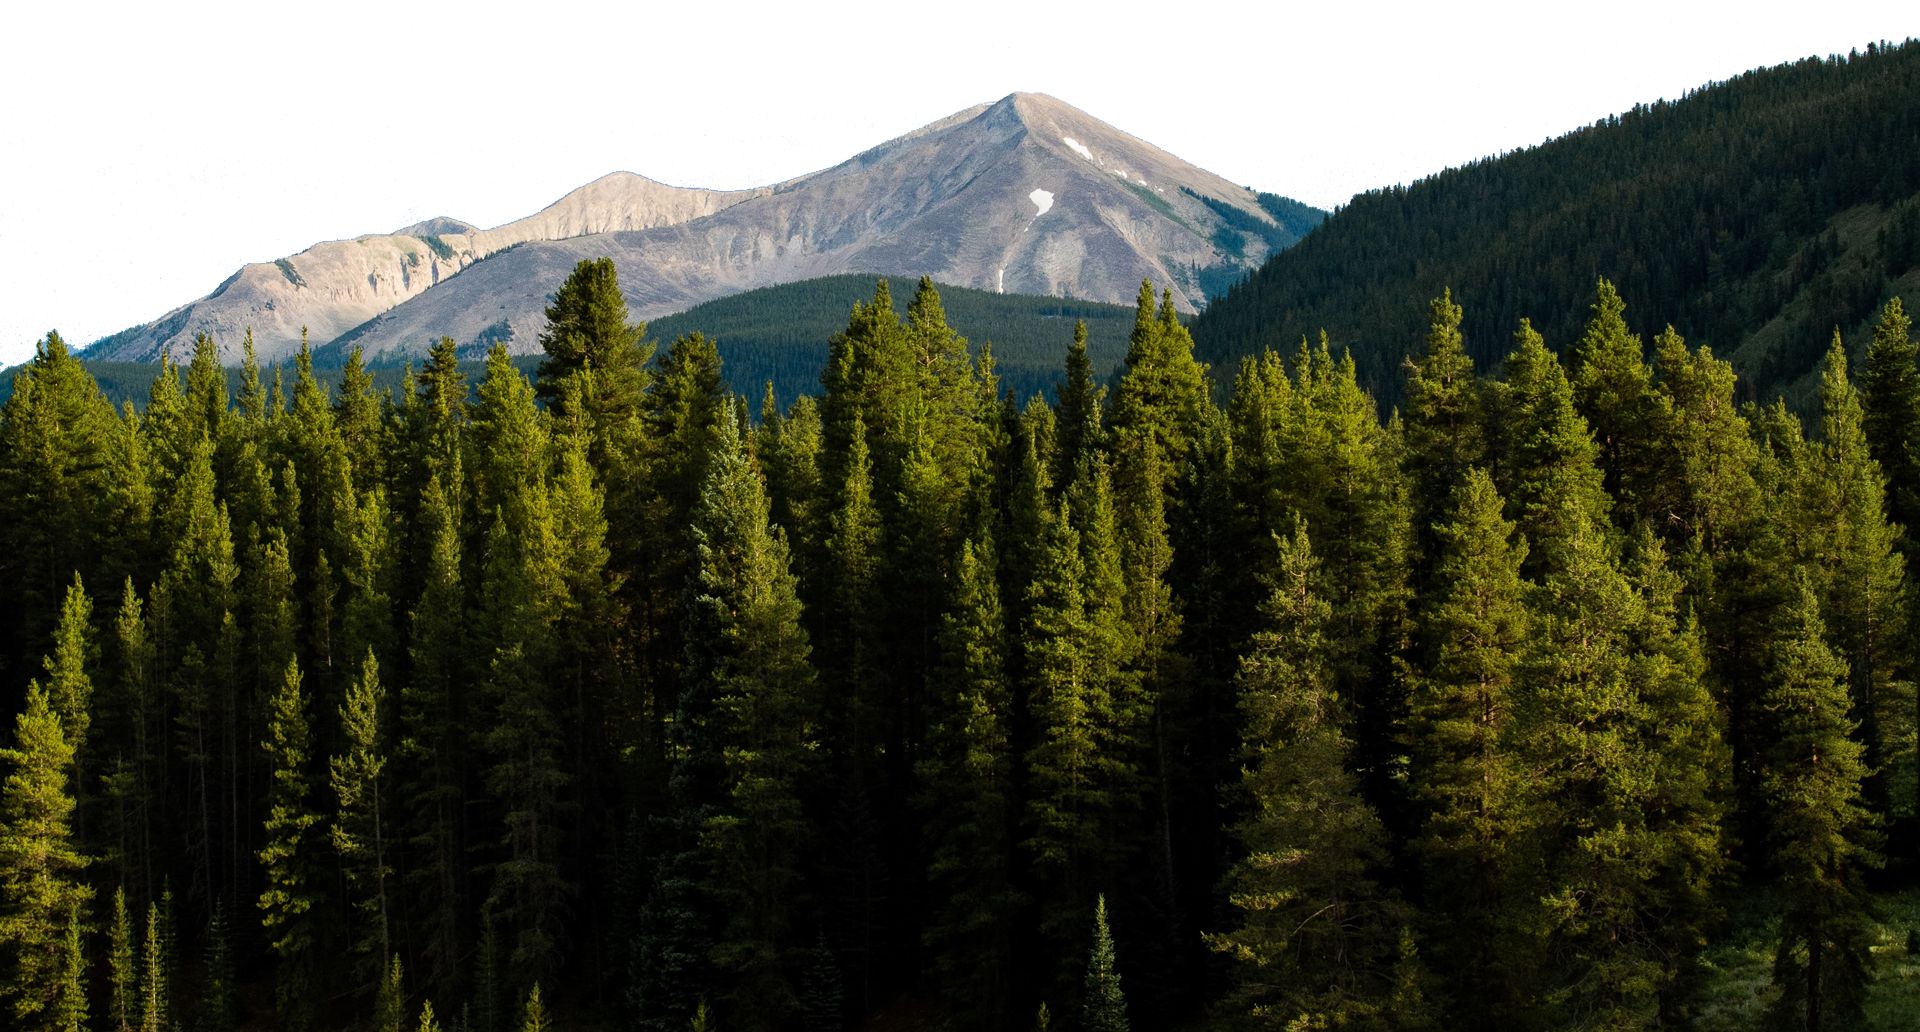 Colorado Forest